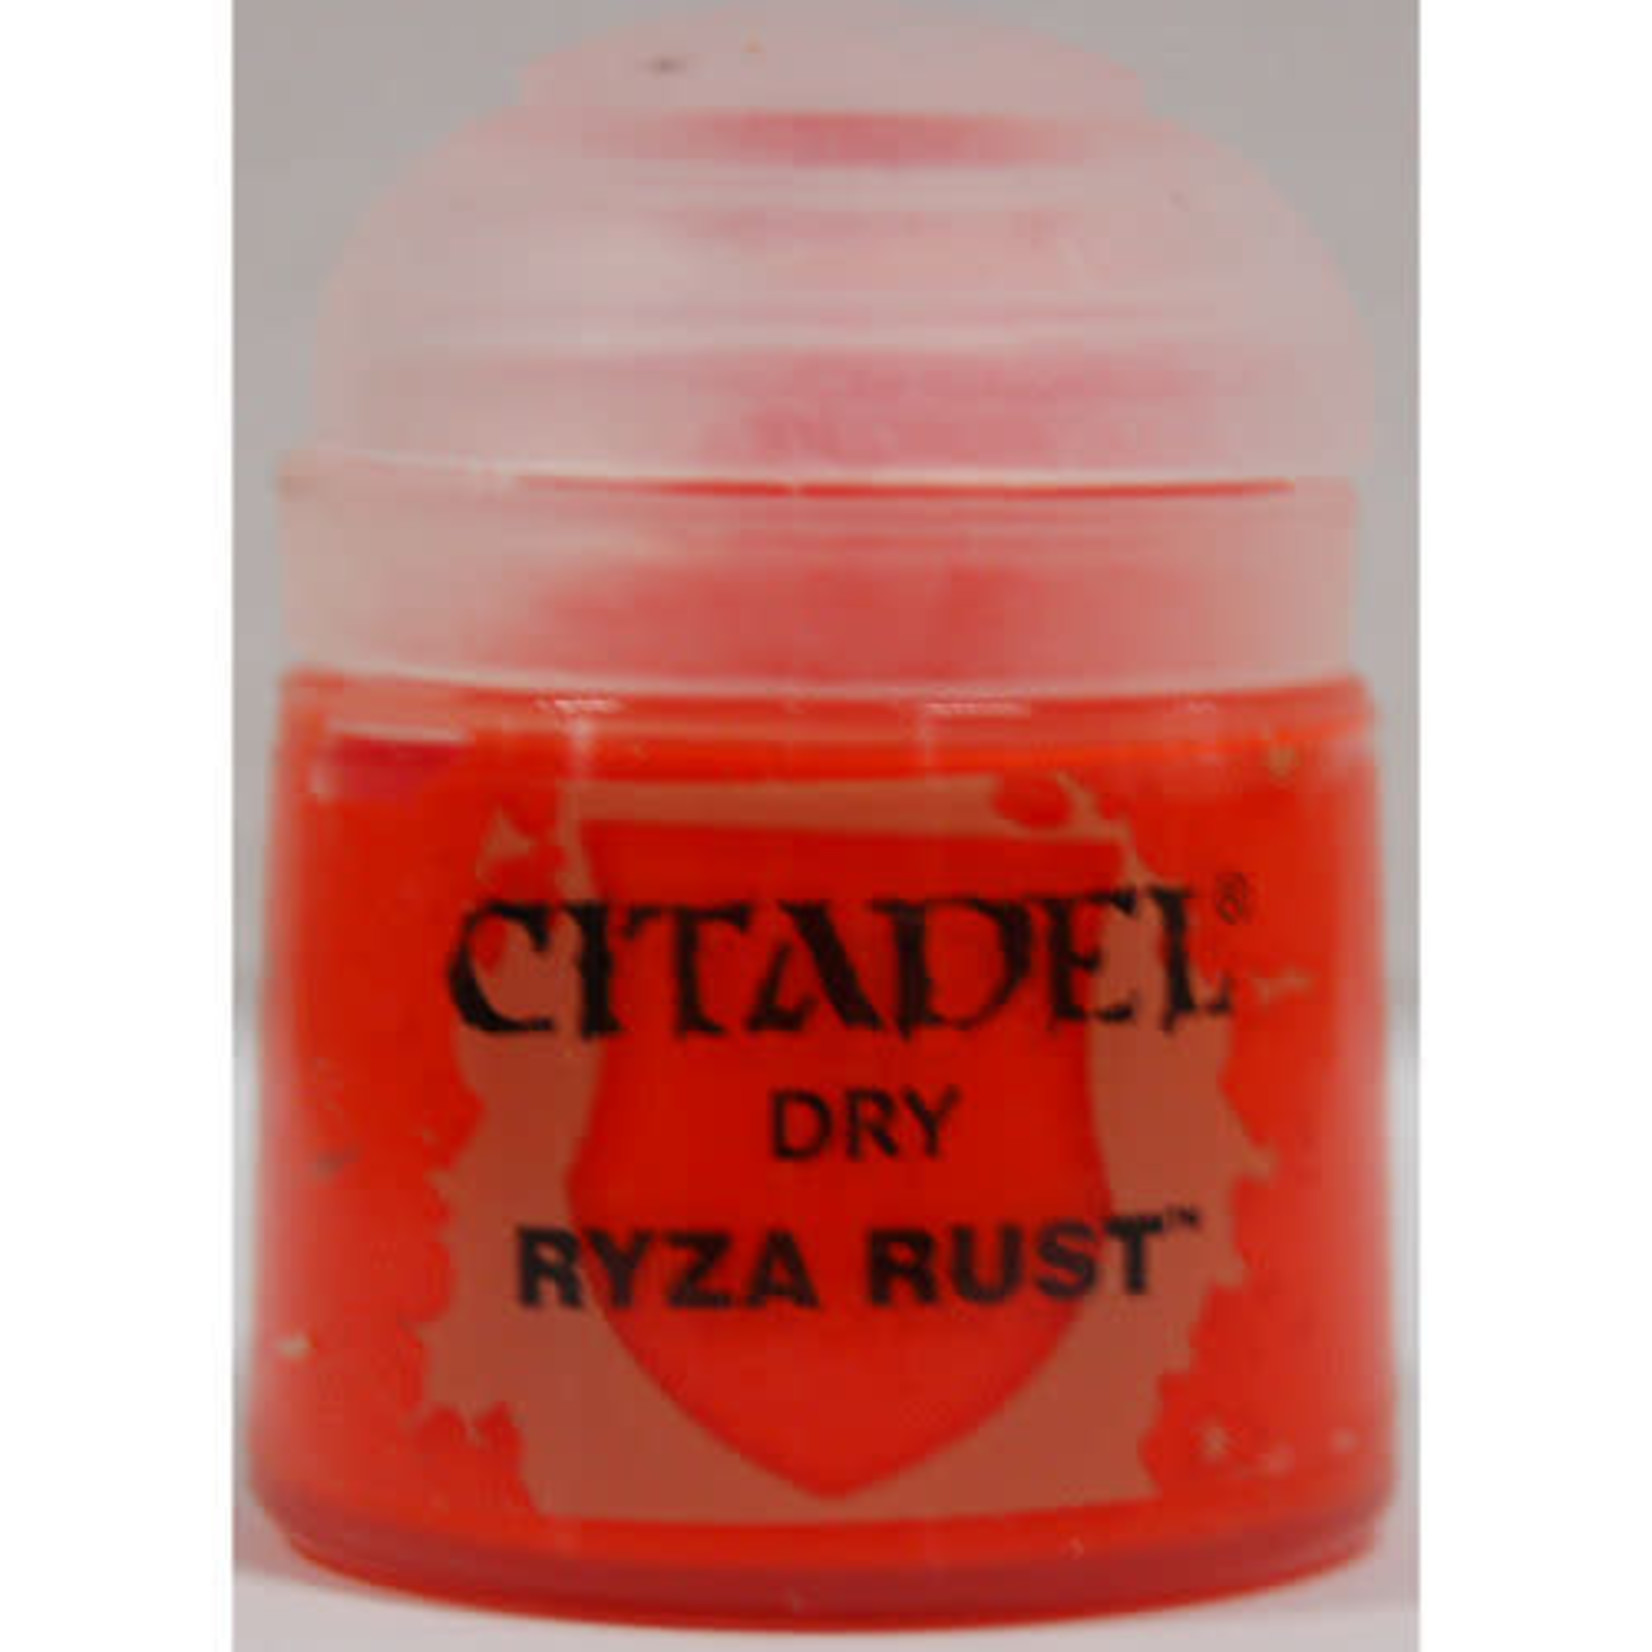 Citadel Citadel Paint - Dry: Ryza Rust